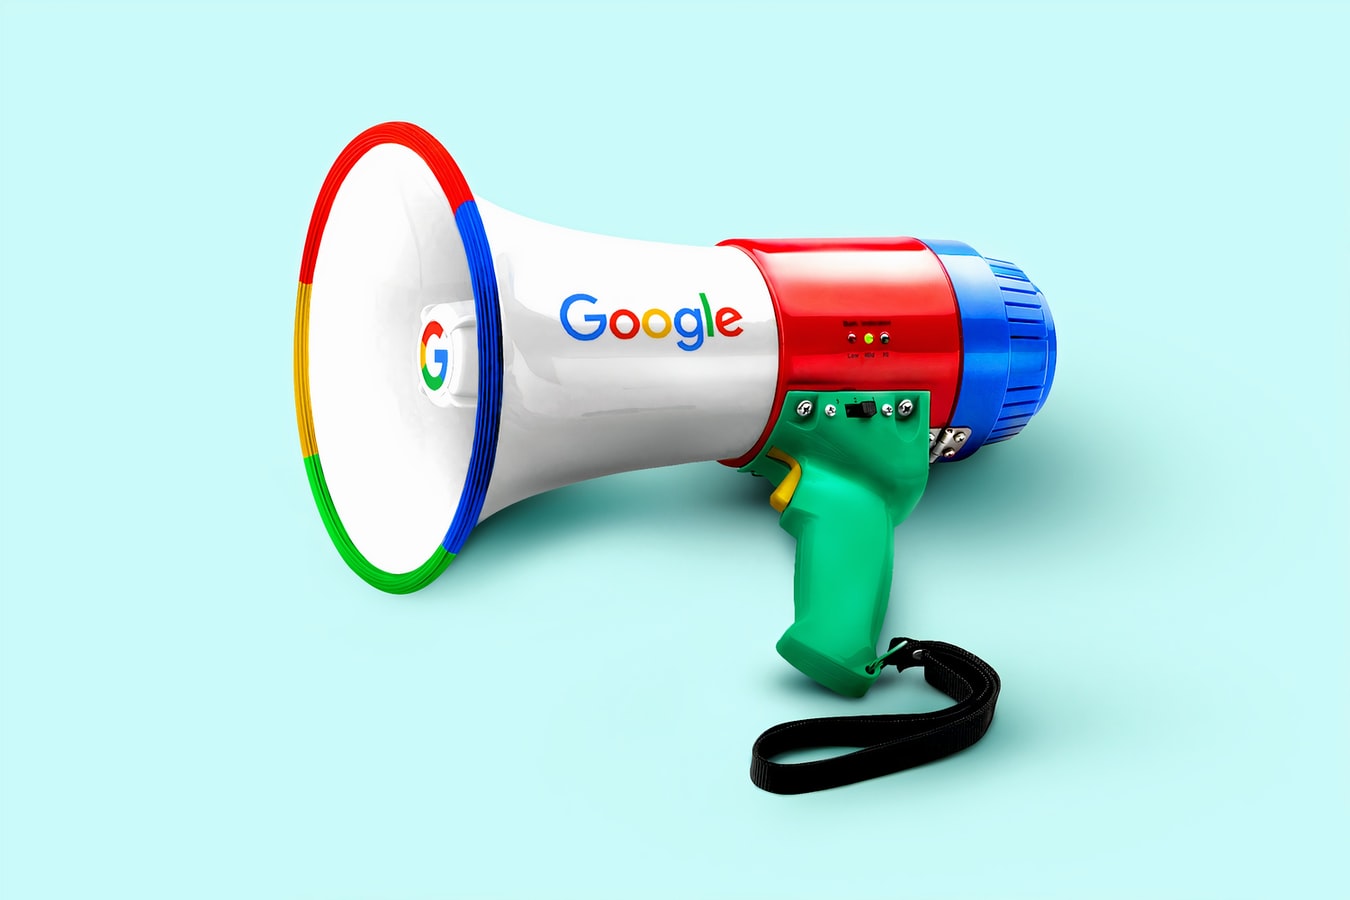 brand awareness using Google